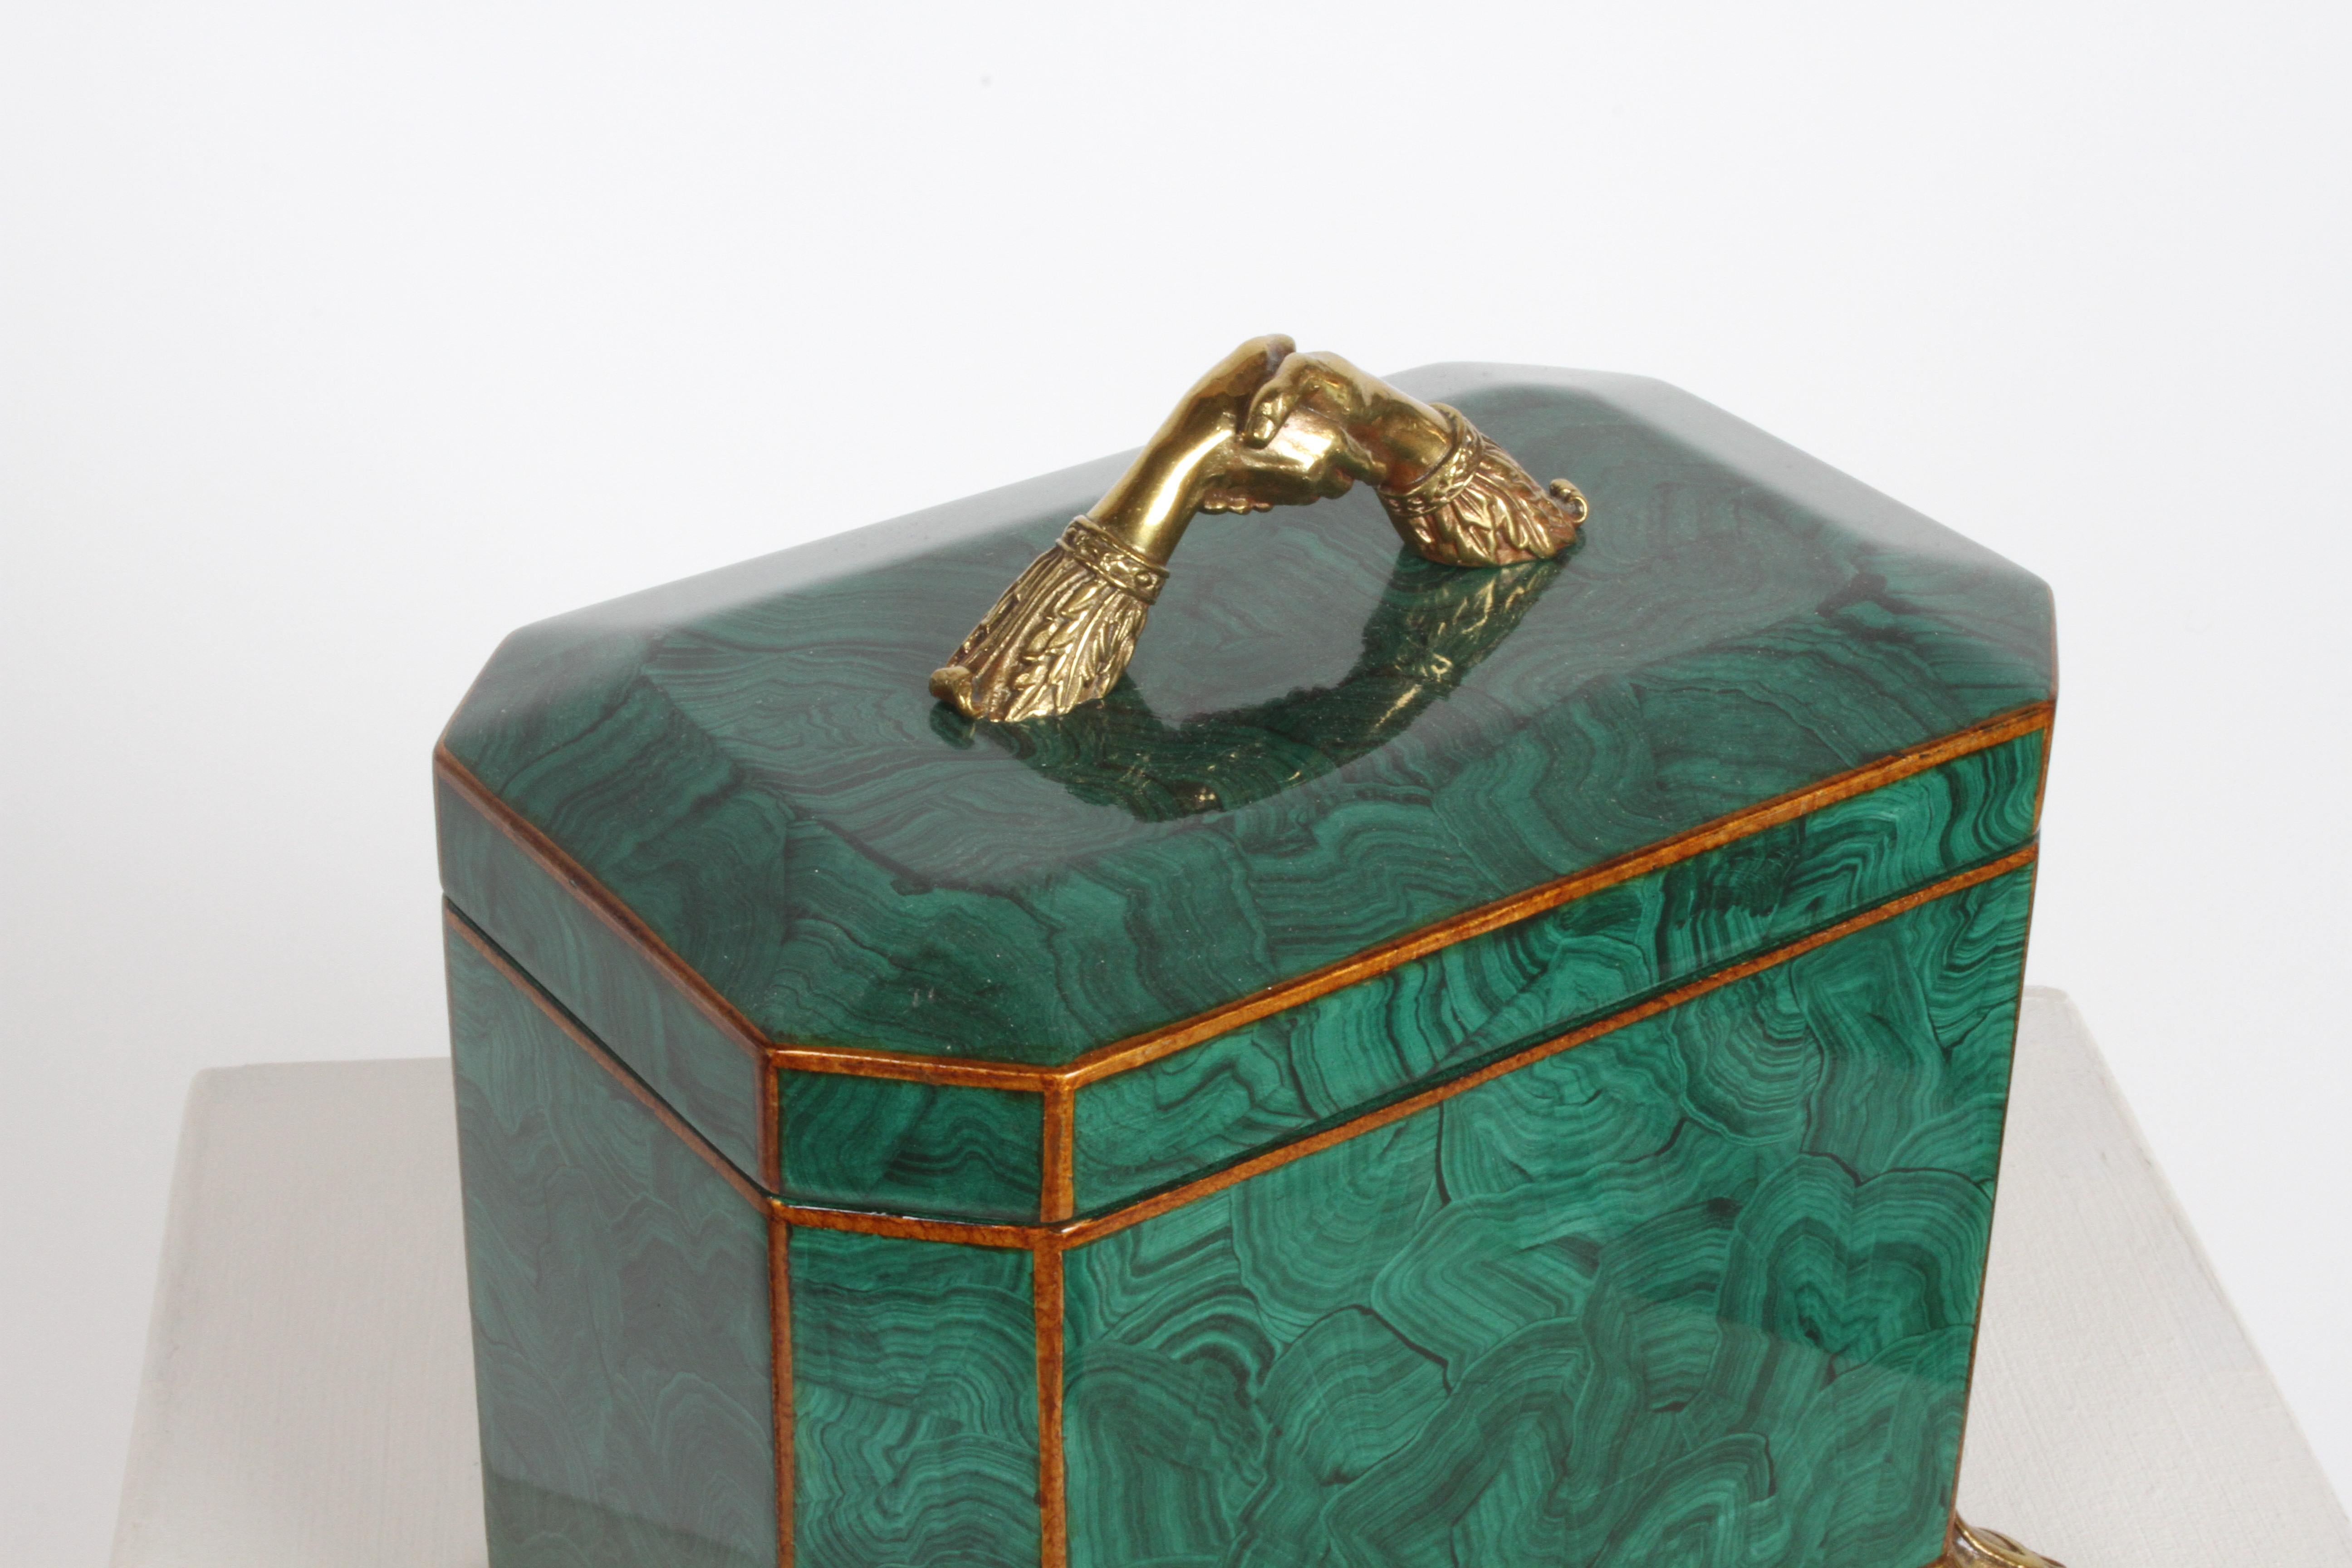 Schachtel aus Malachitimitat im Fornasetti-Stil von Maitland-Smith mit Messinggriffen und -füßen  (Hollywood Regency)